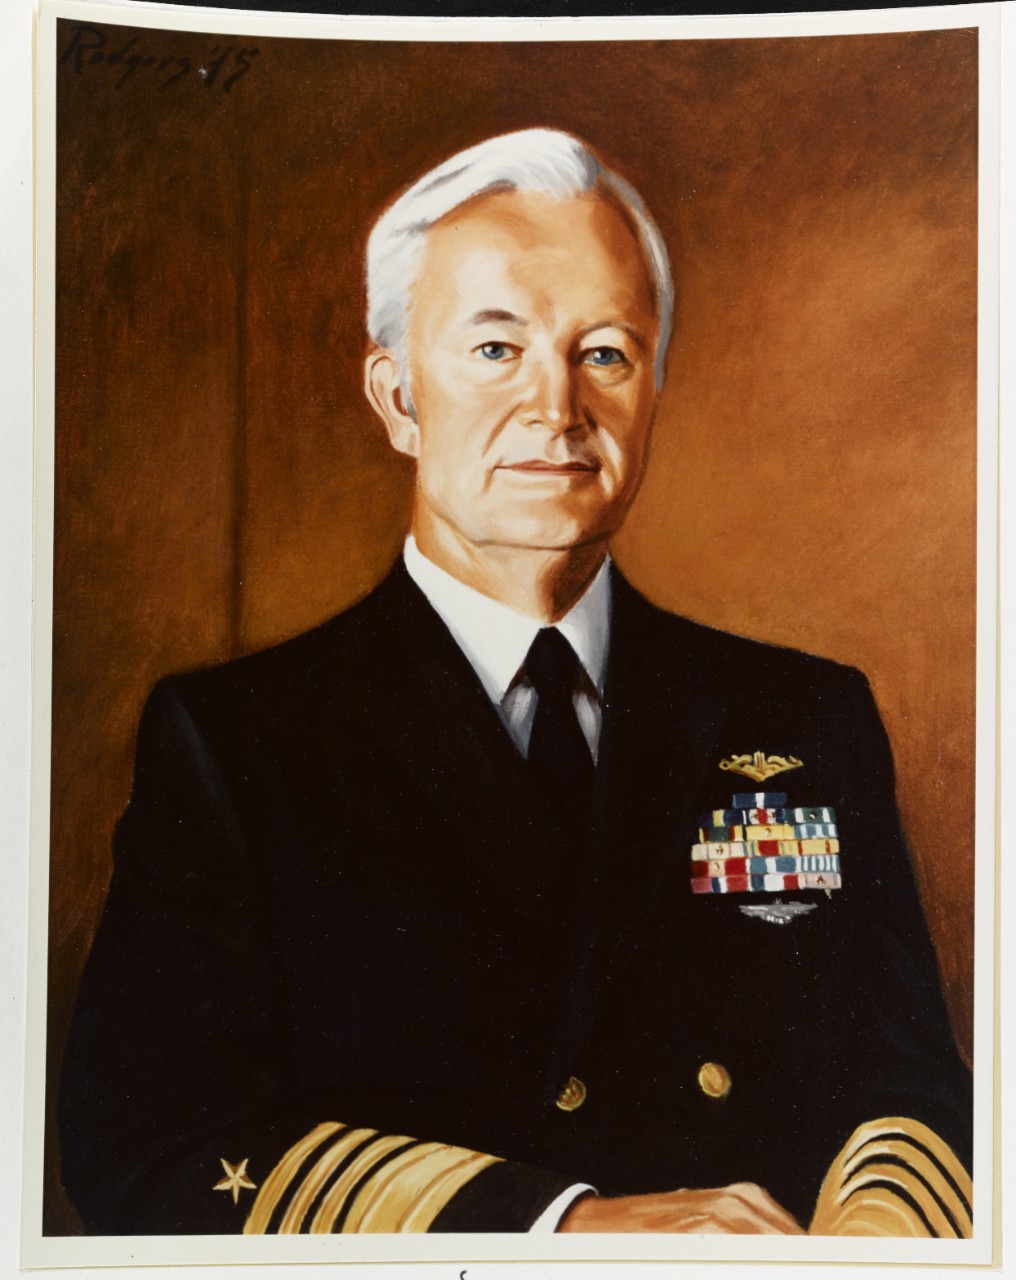 Admiral Ignatius J. Galantin, USN